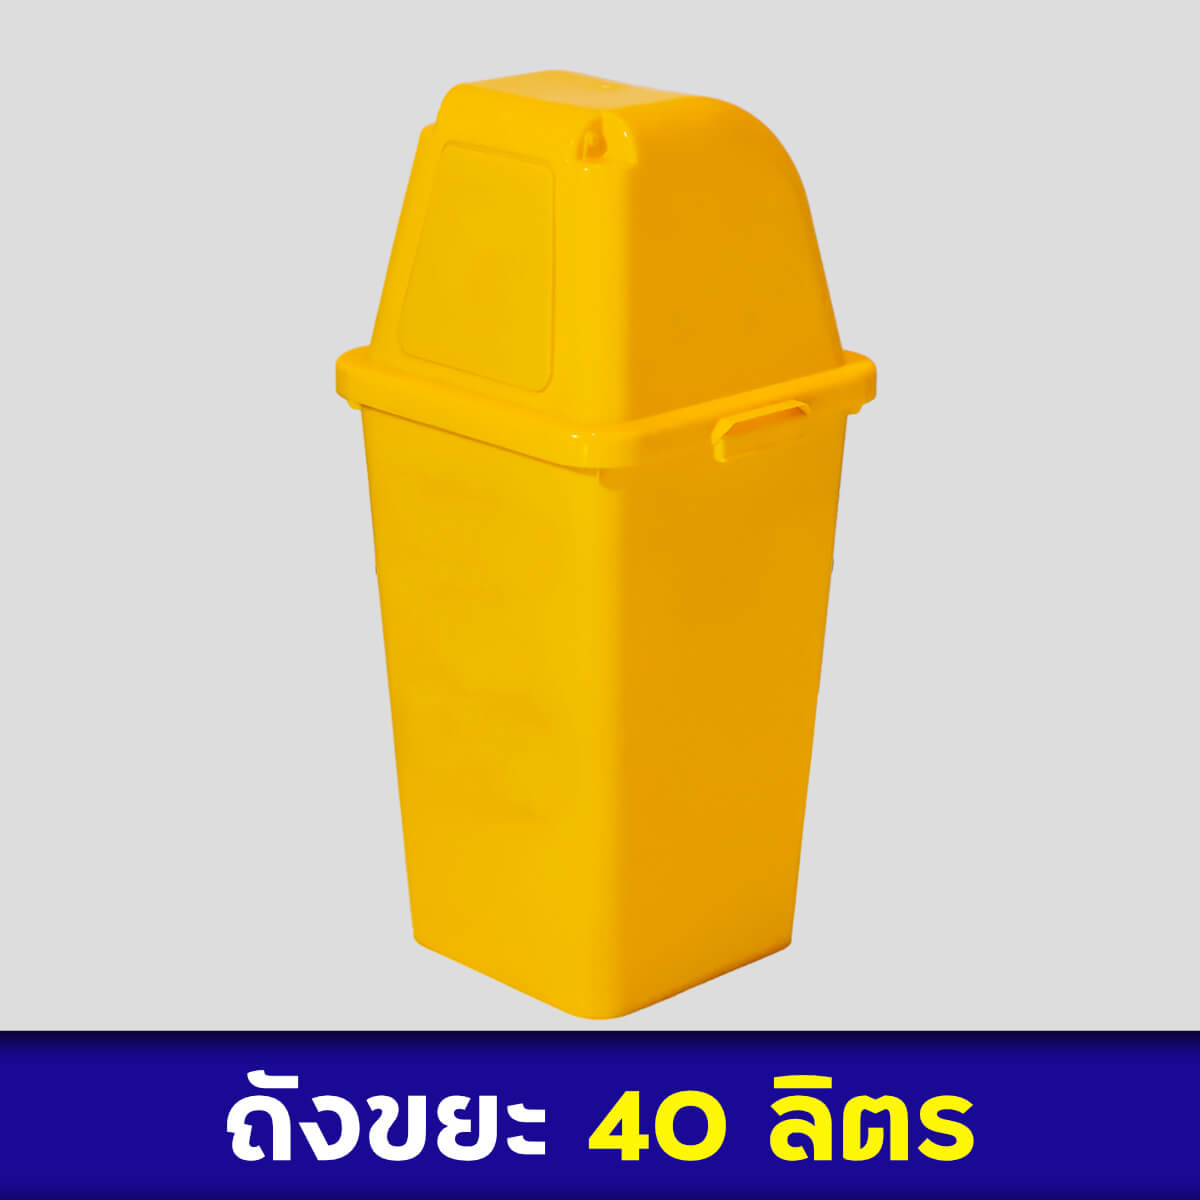 ถังขยะสีเหลือง 40ลิตร